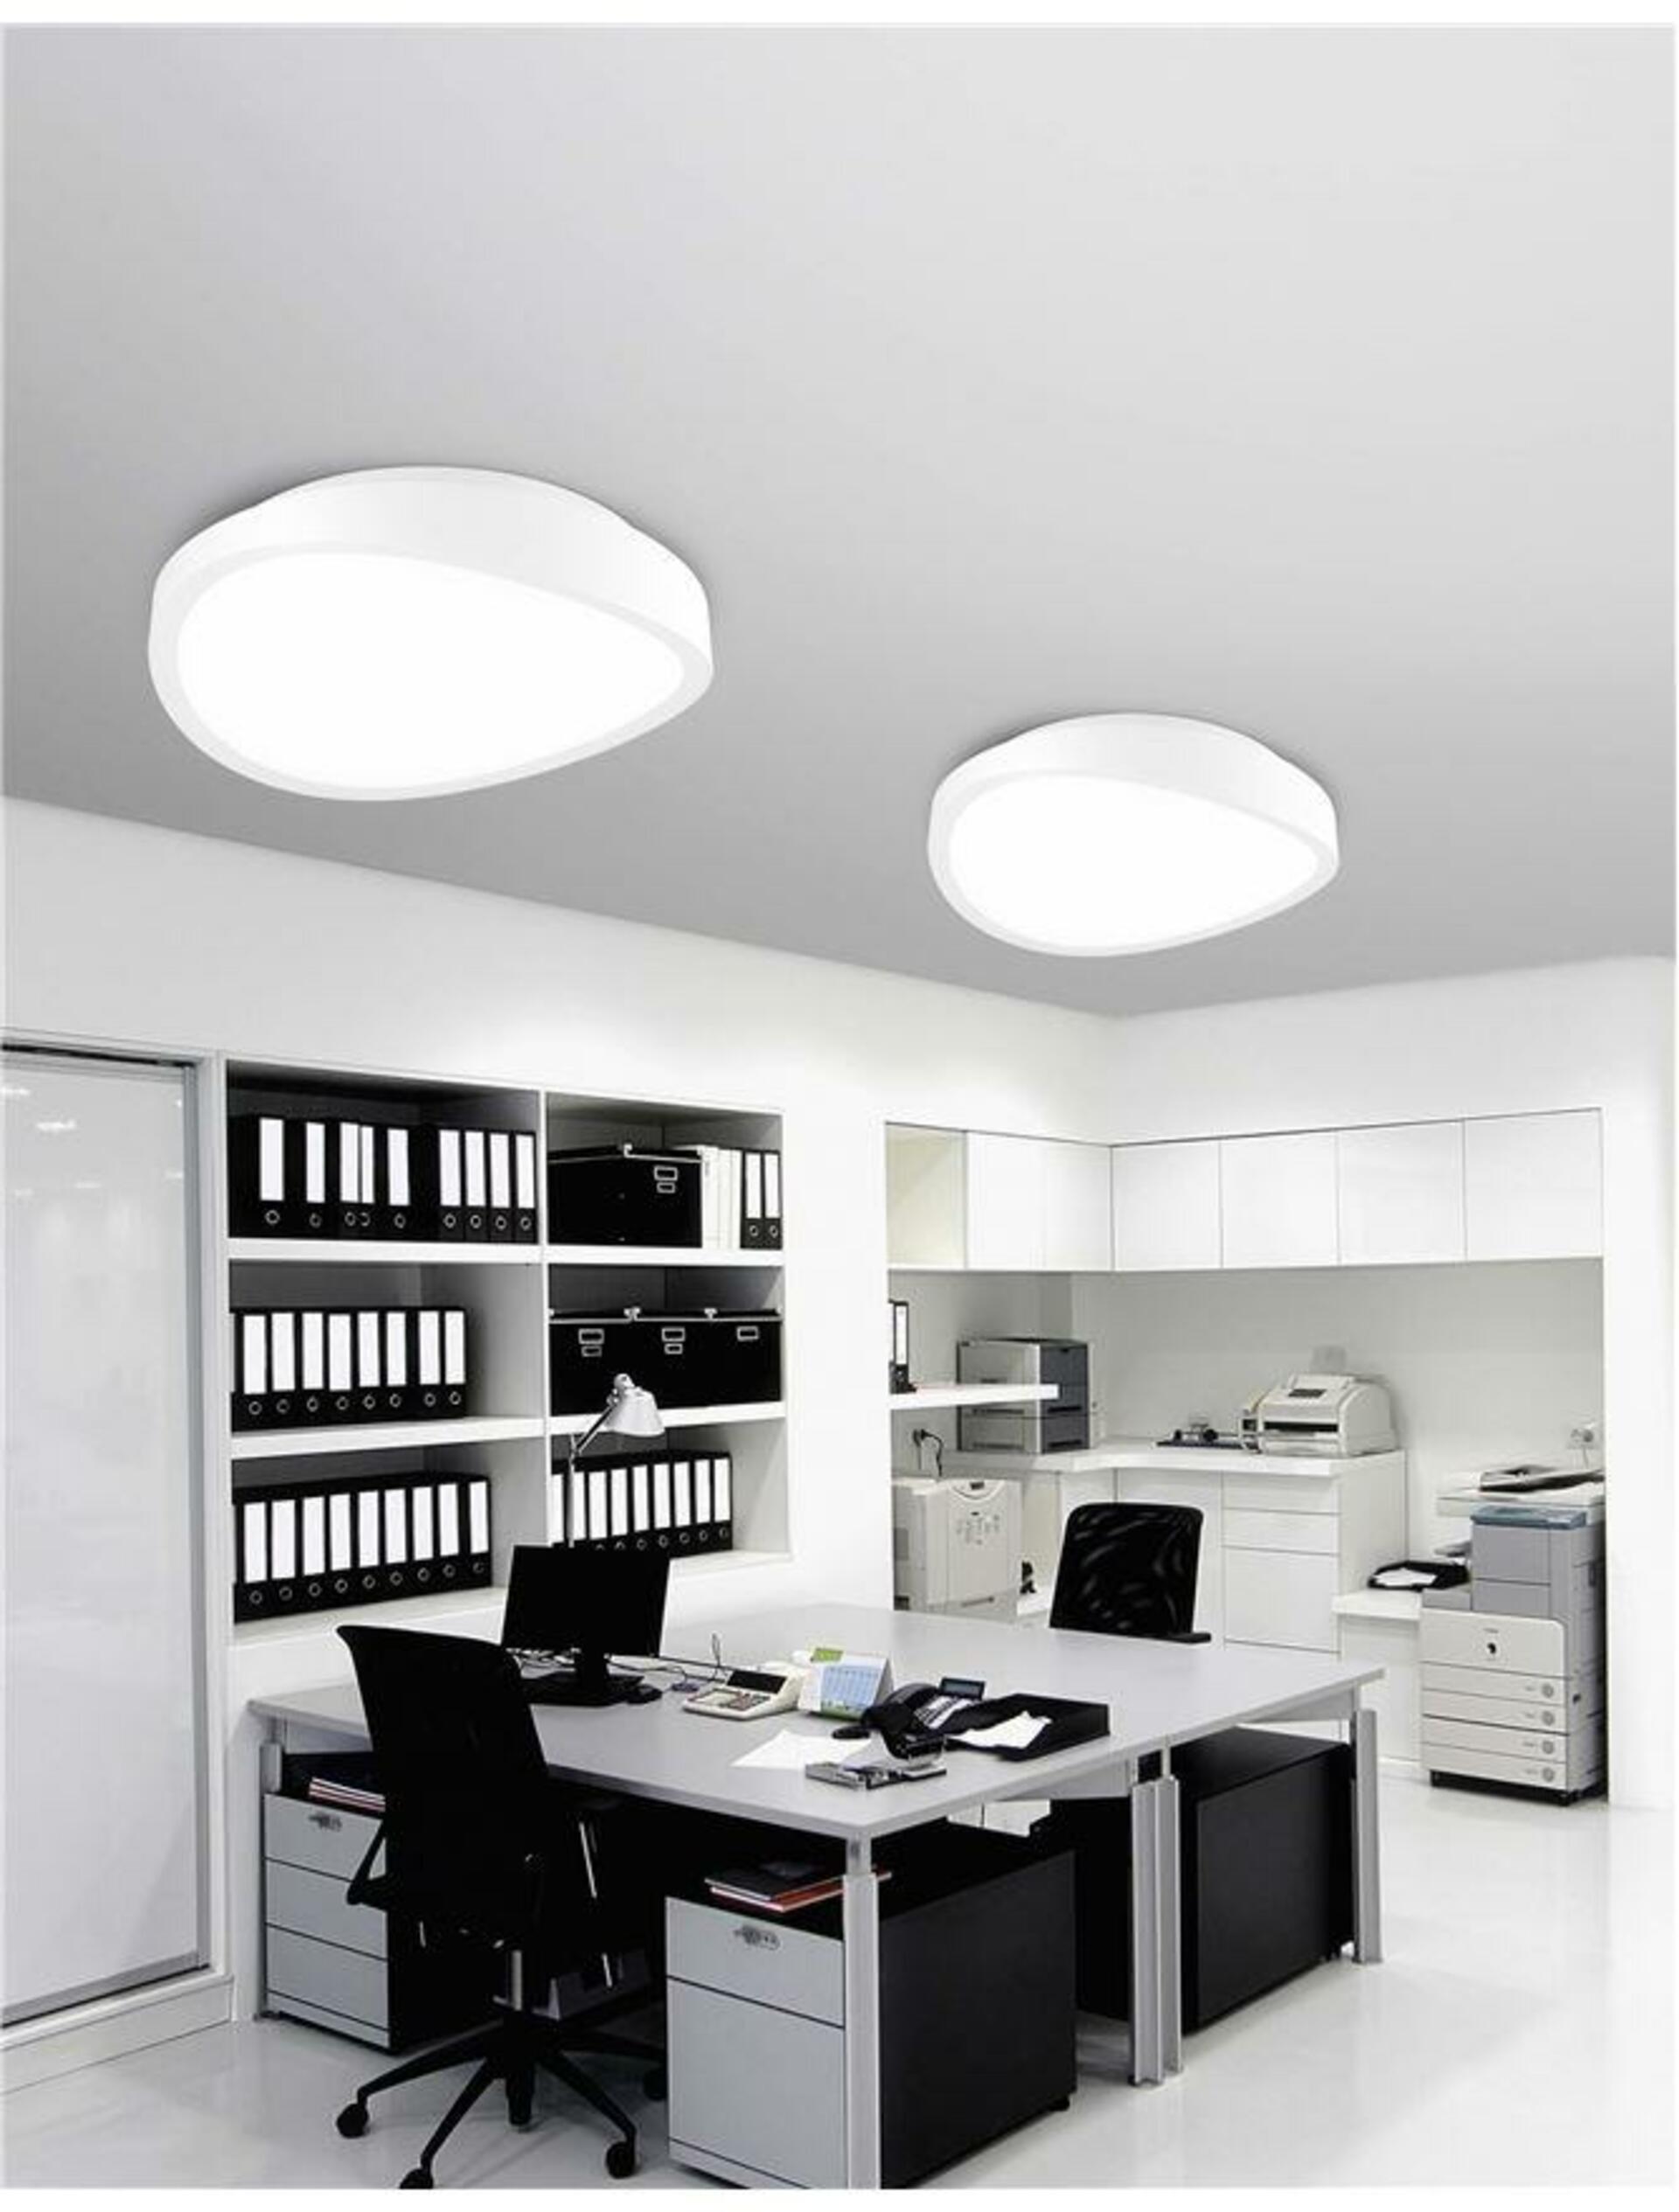 Nova Luce Bílé nepravidelné stropní LED svítidlo Onda - pr. 400 x 115 mm, 27 W, bílá NV 61471601